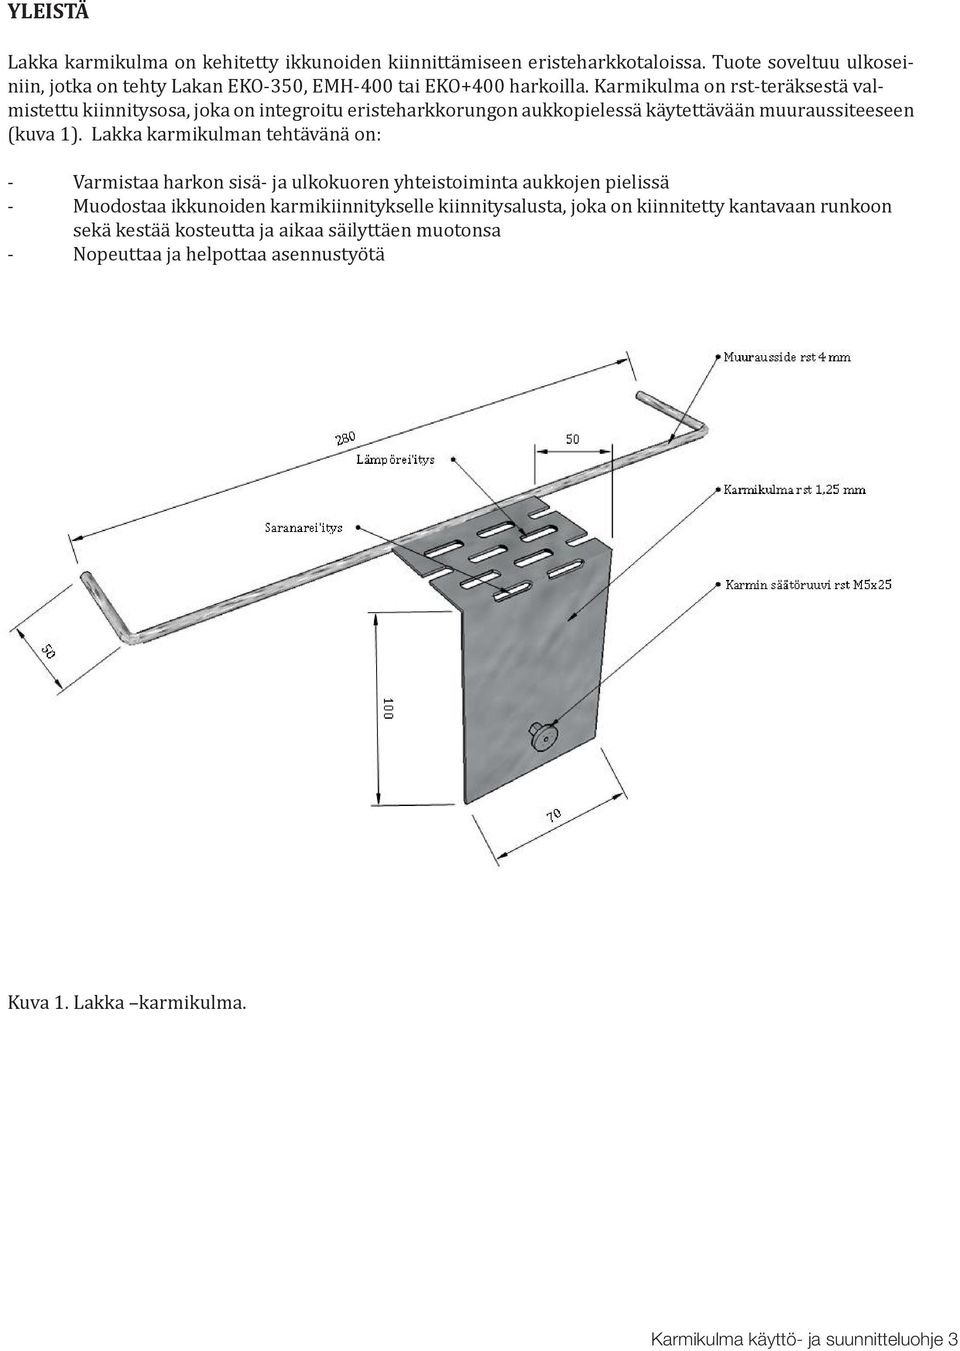 Karmikulma on rst-teräksestä valmistettu kiinnitysosa, joka on integroitu eristeharkkorungon aukkopielessä käytettävään muuraussiteeseen (kuva 1).